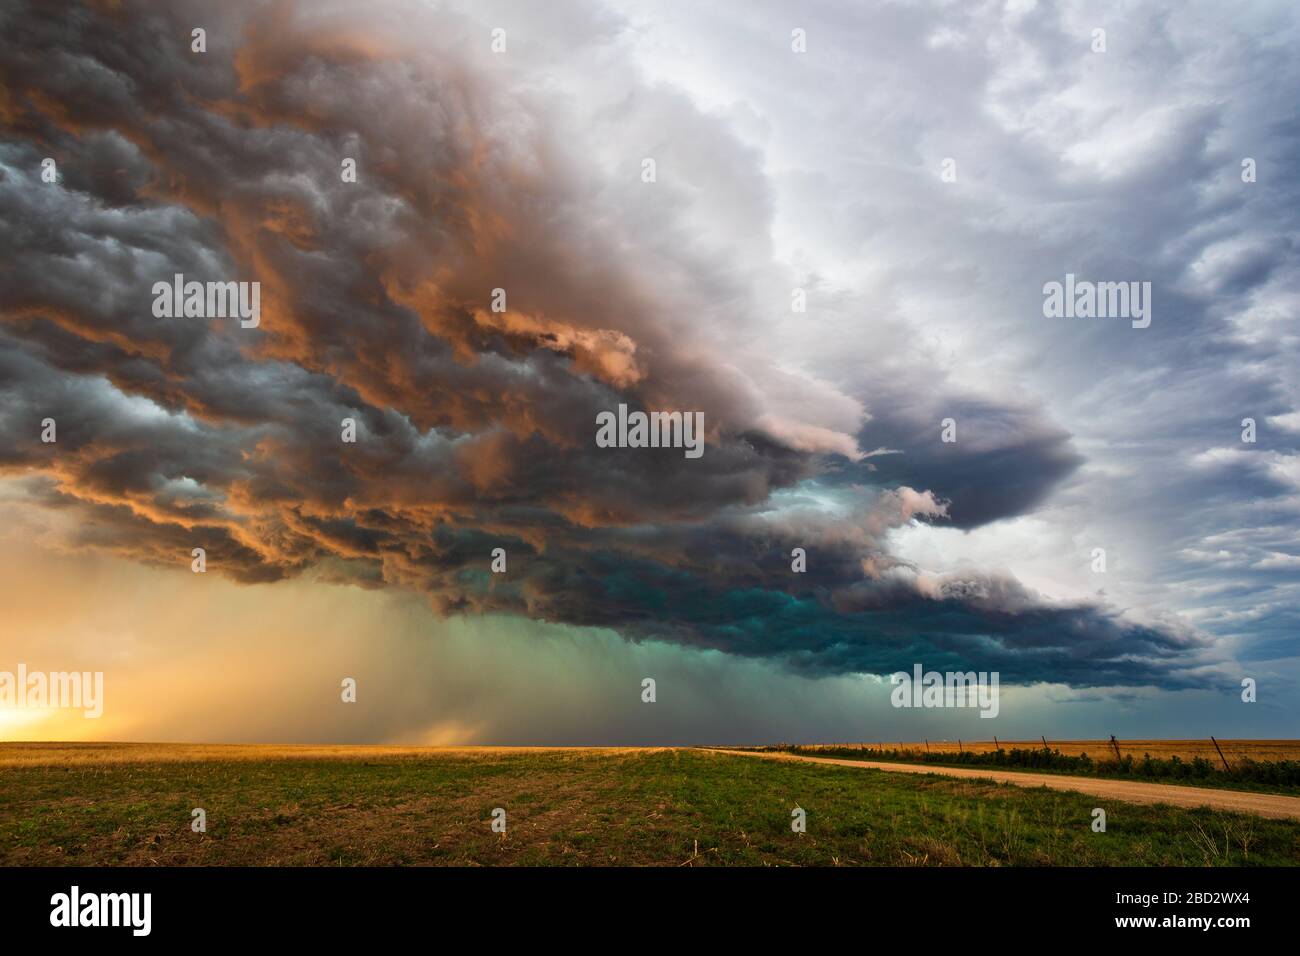 La luce del sole illumina la moody, le nubi drammatiche della tempesta sopra un campo al tramonto mentre un hailstorm si avvicina a Eads, Colorado Foto Stock